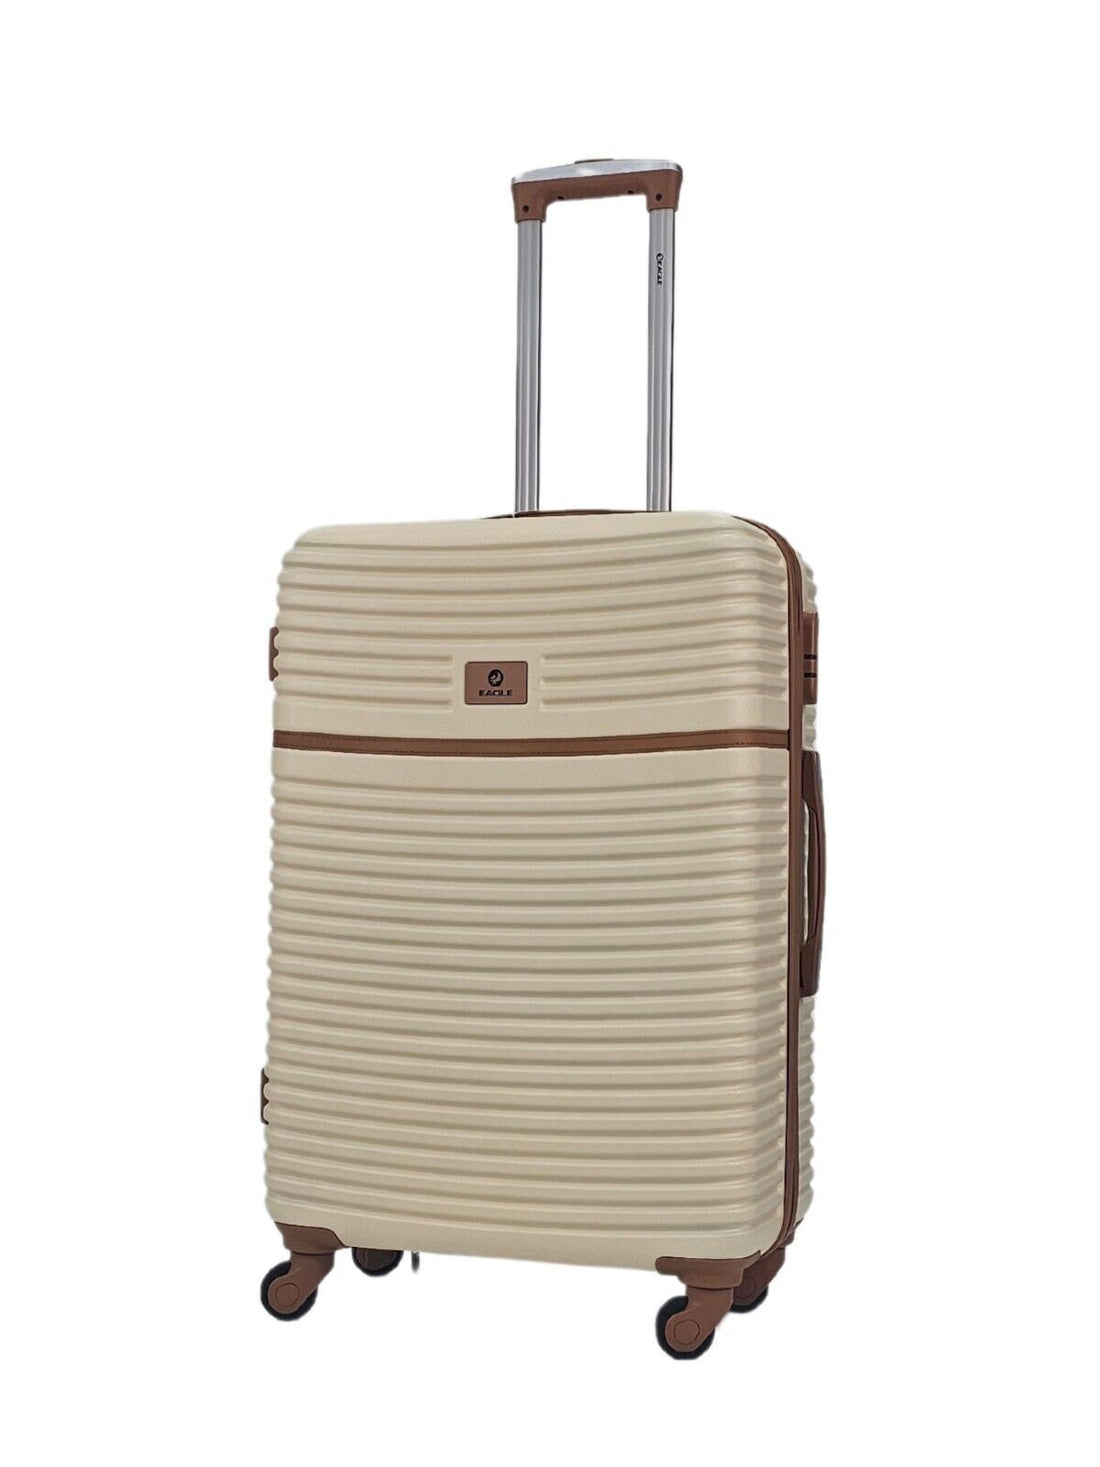 Bridgeport Medium Hard Shell Suitcase in Cream